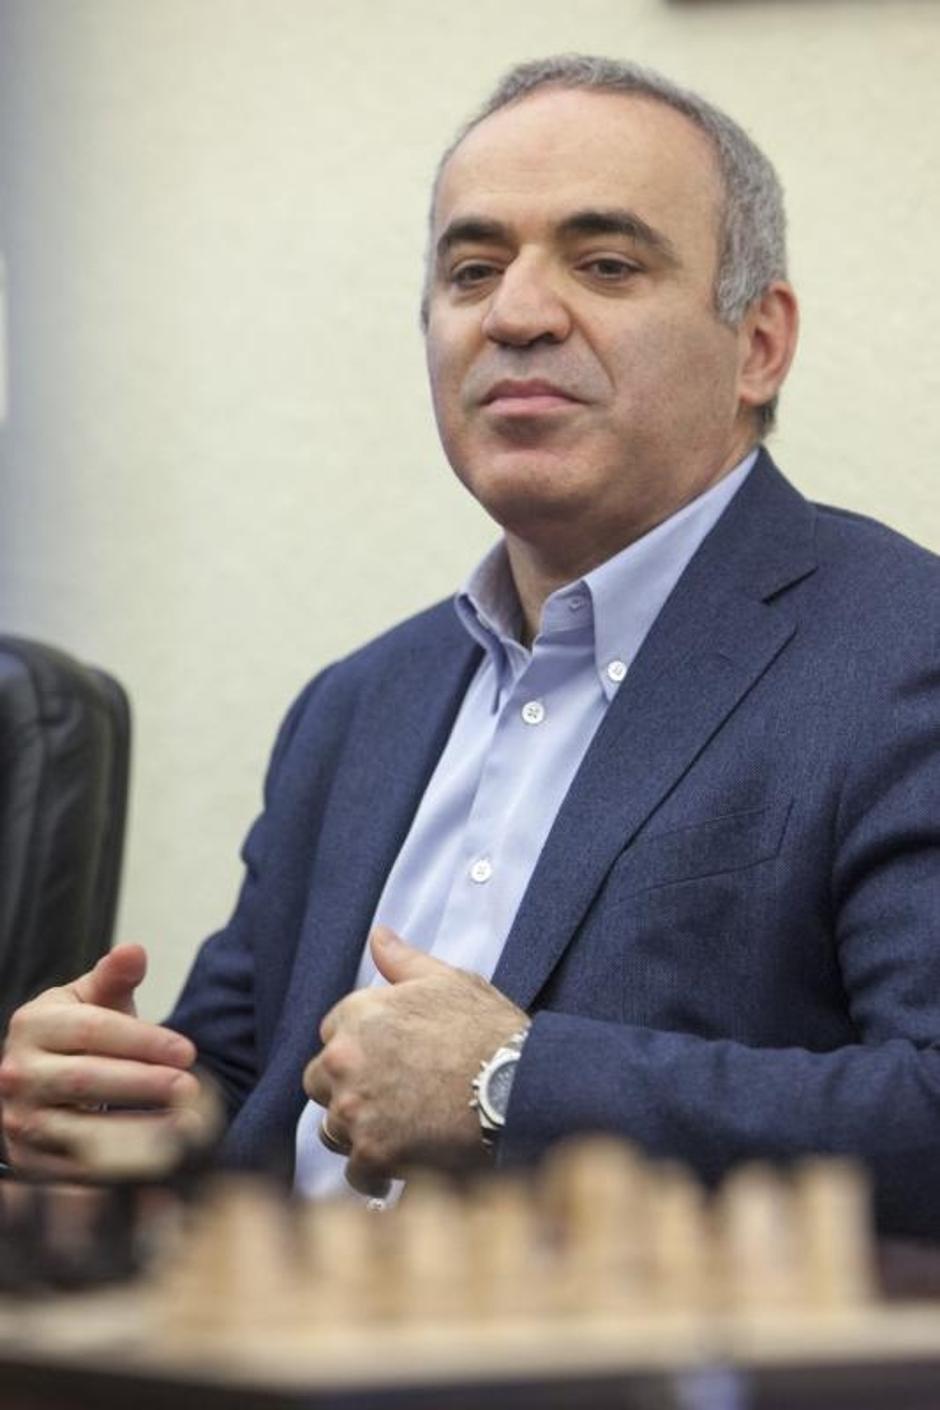 Gari Kasparov | Author: Nel Pavletić (PIXSELL)